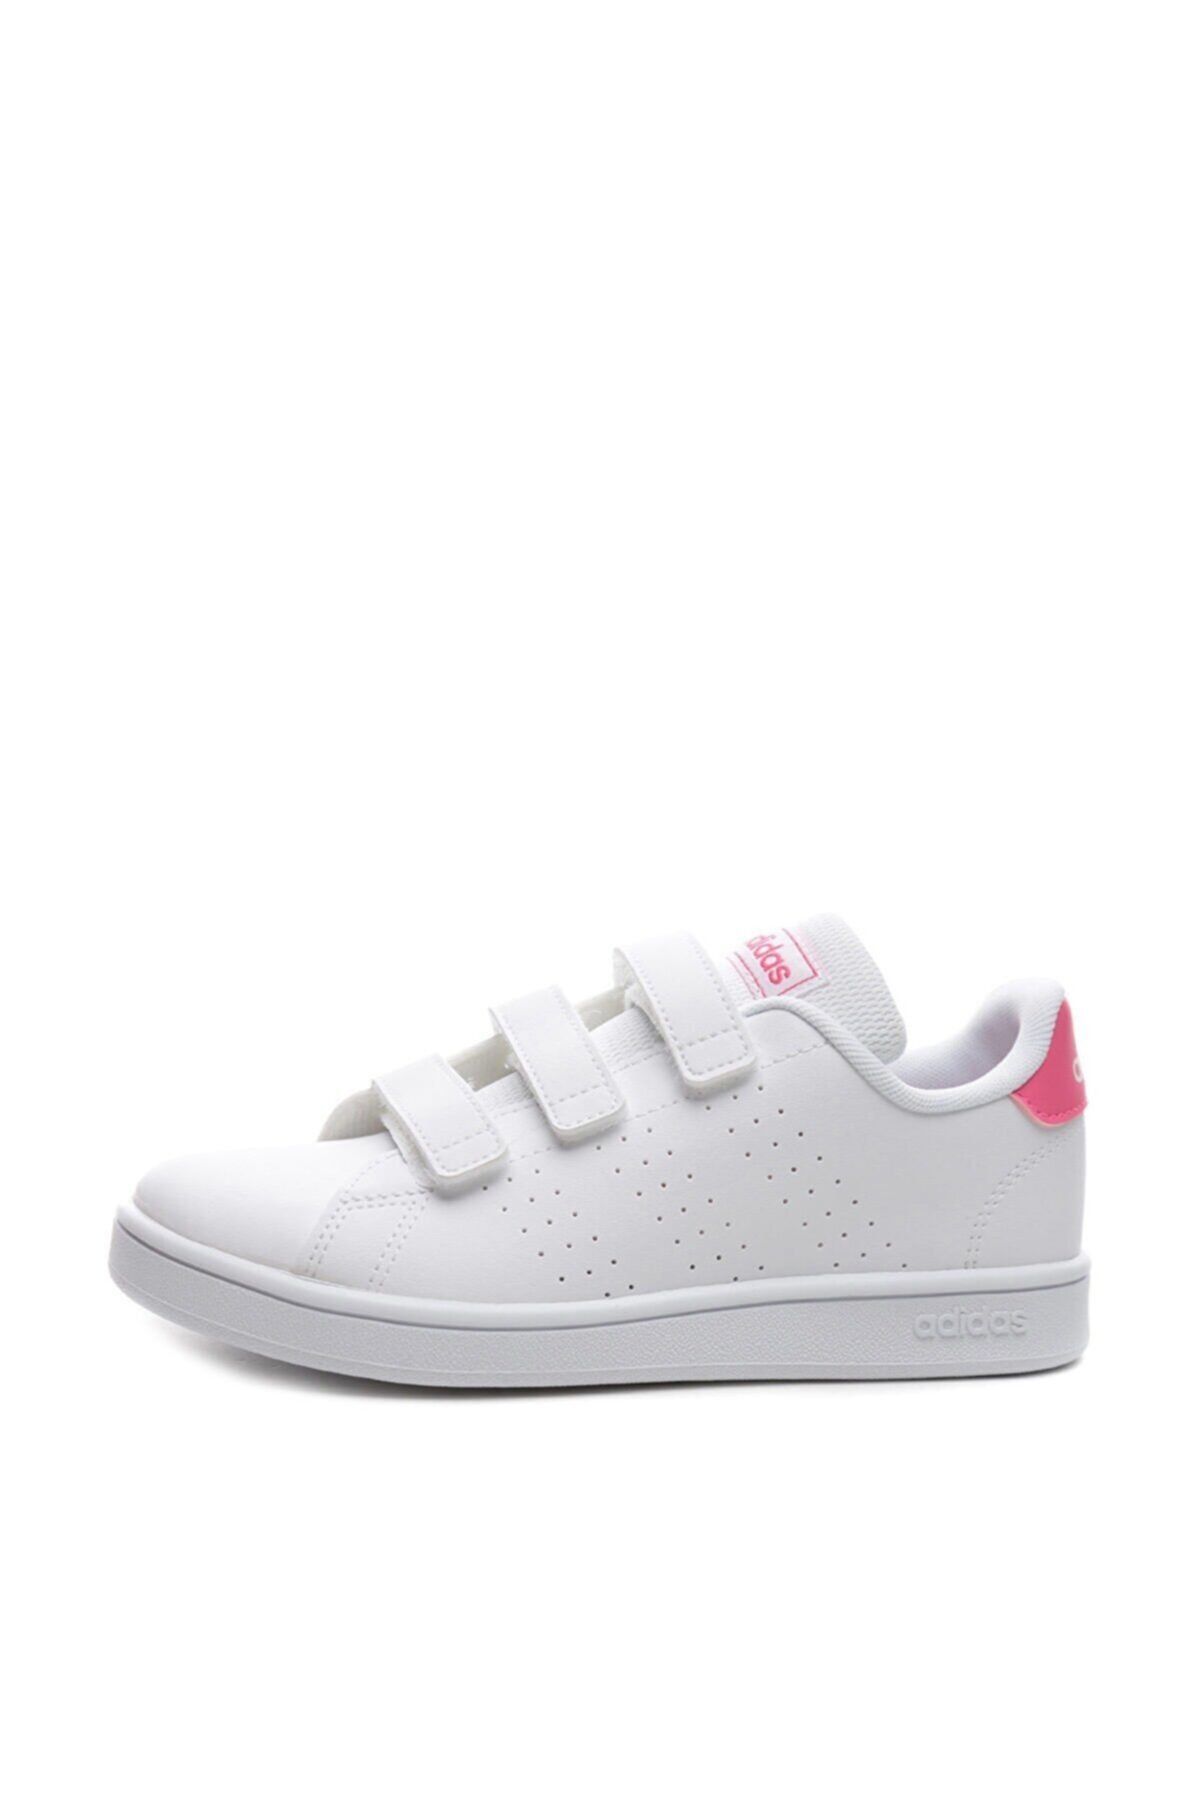 adidas Advantage Beyaz Kız Çocuk Sneaker Ayakkabı 100481652 Ef0221-c